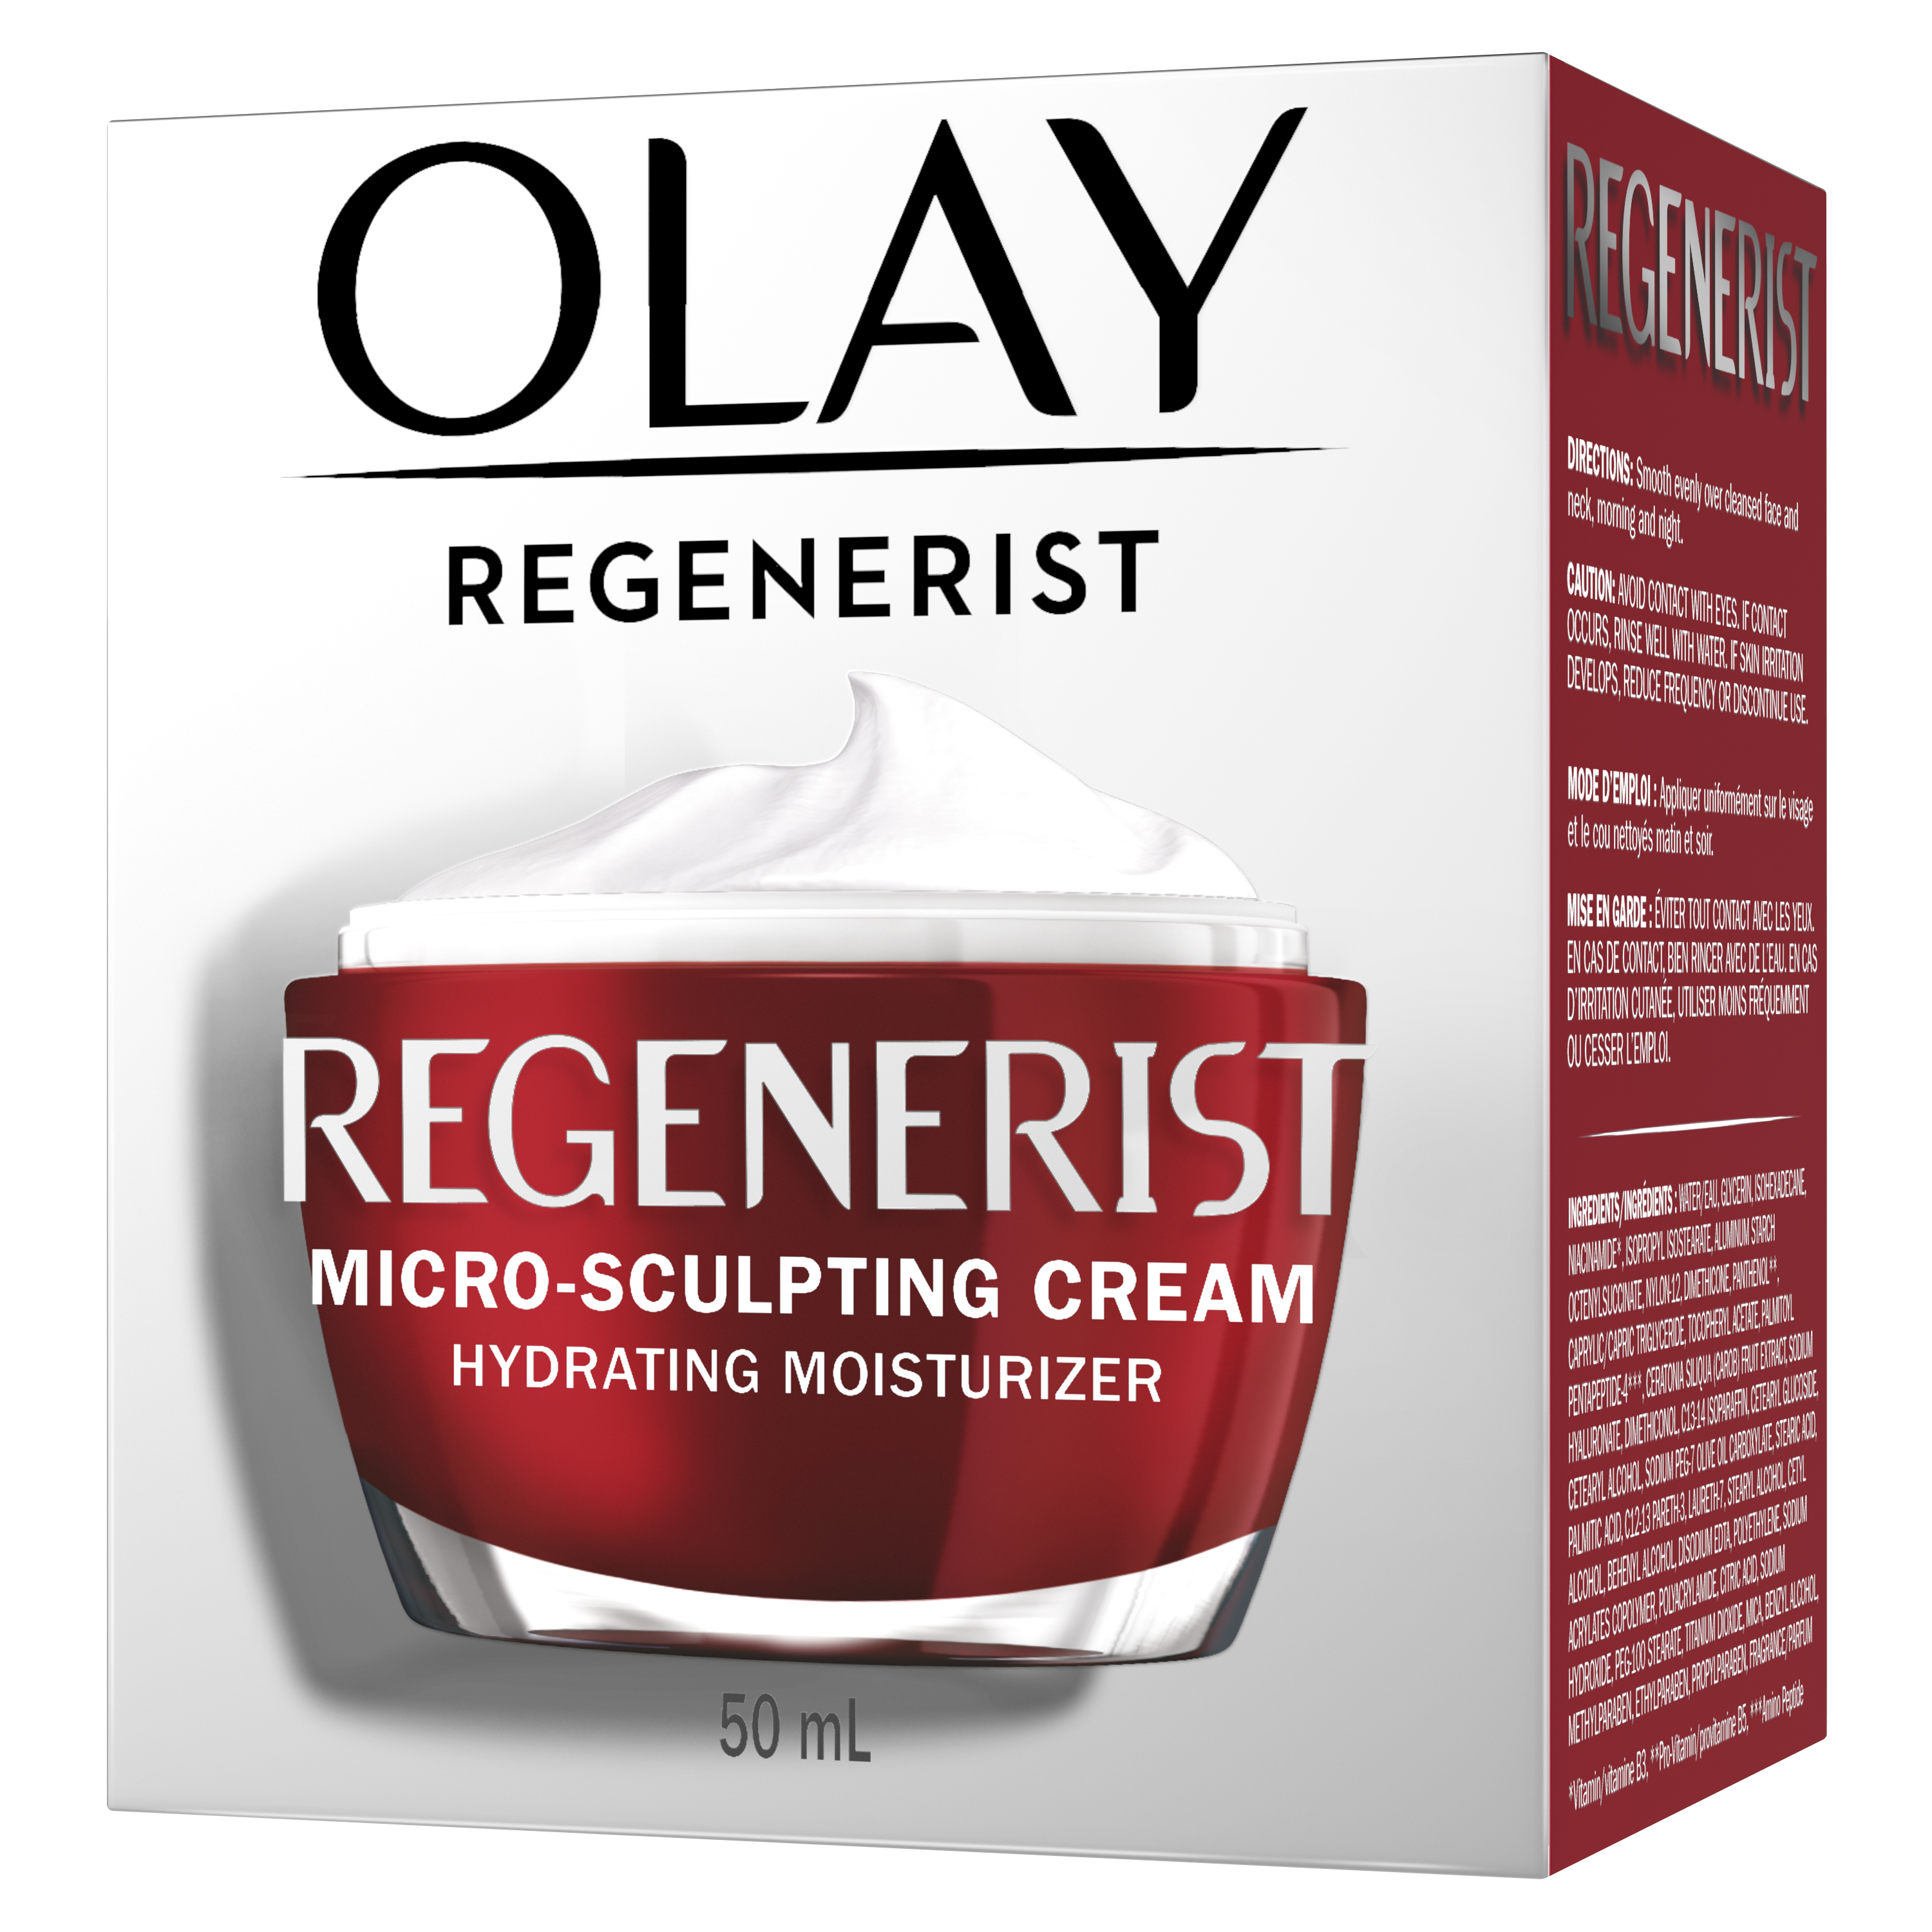 Crème hydratante micro-sculptante pour le visage Regenerist de Olay_3